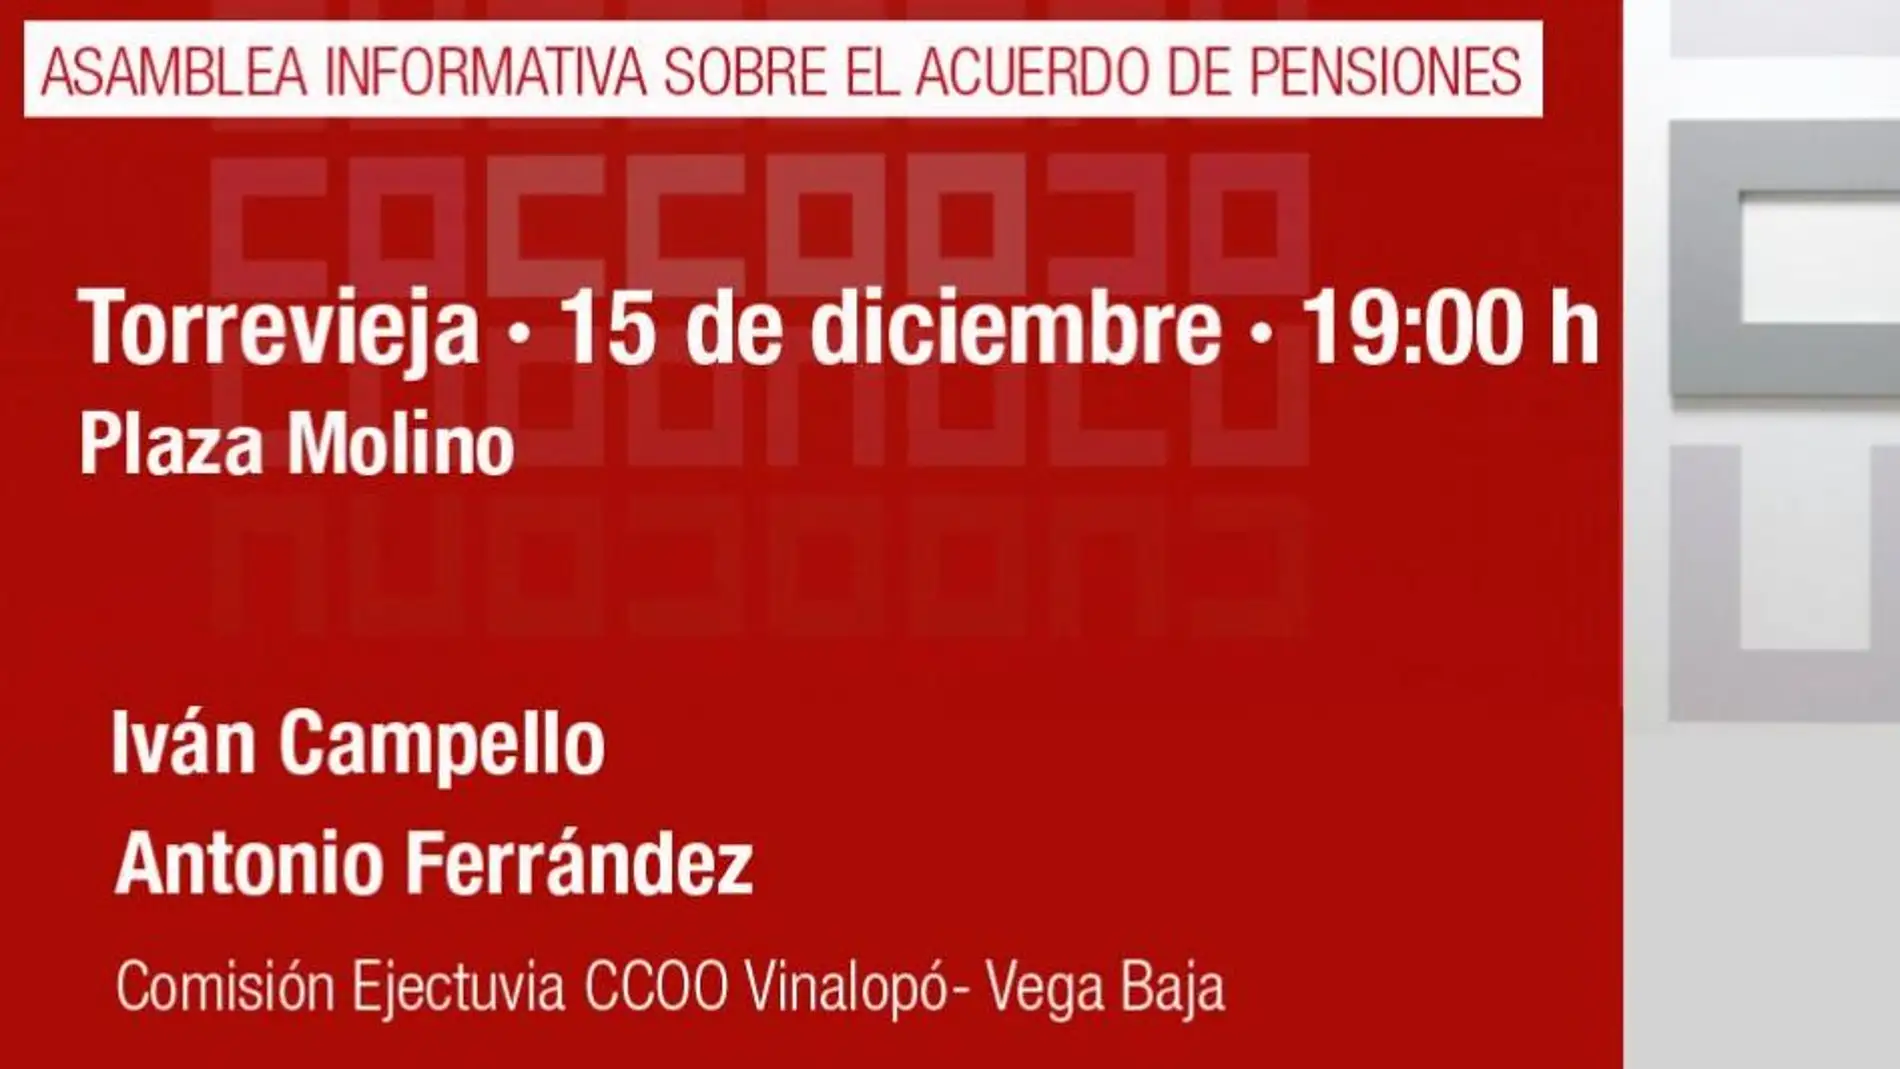 La campaña informativa 'Pensiones con futuro' organizada por CC.OO,llega a Torrevieja 